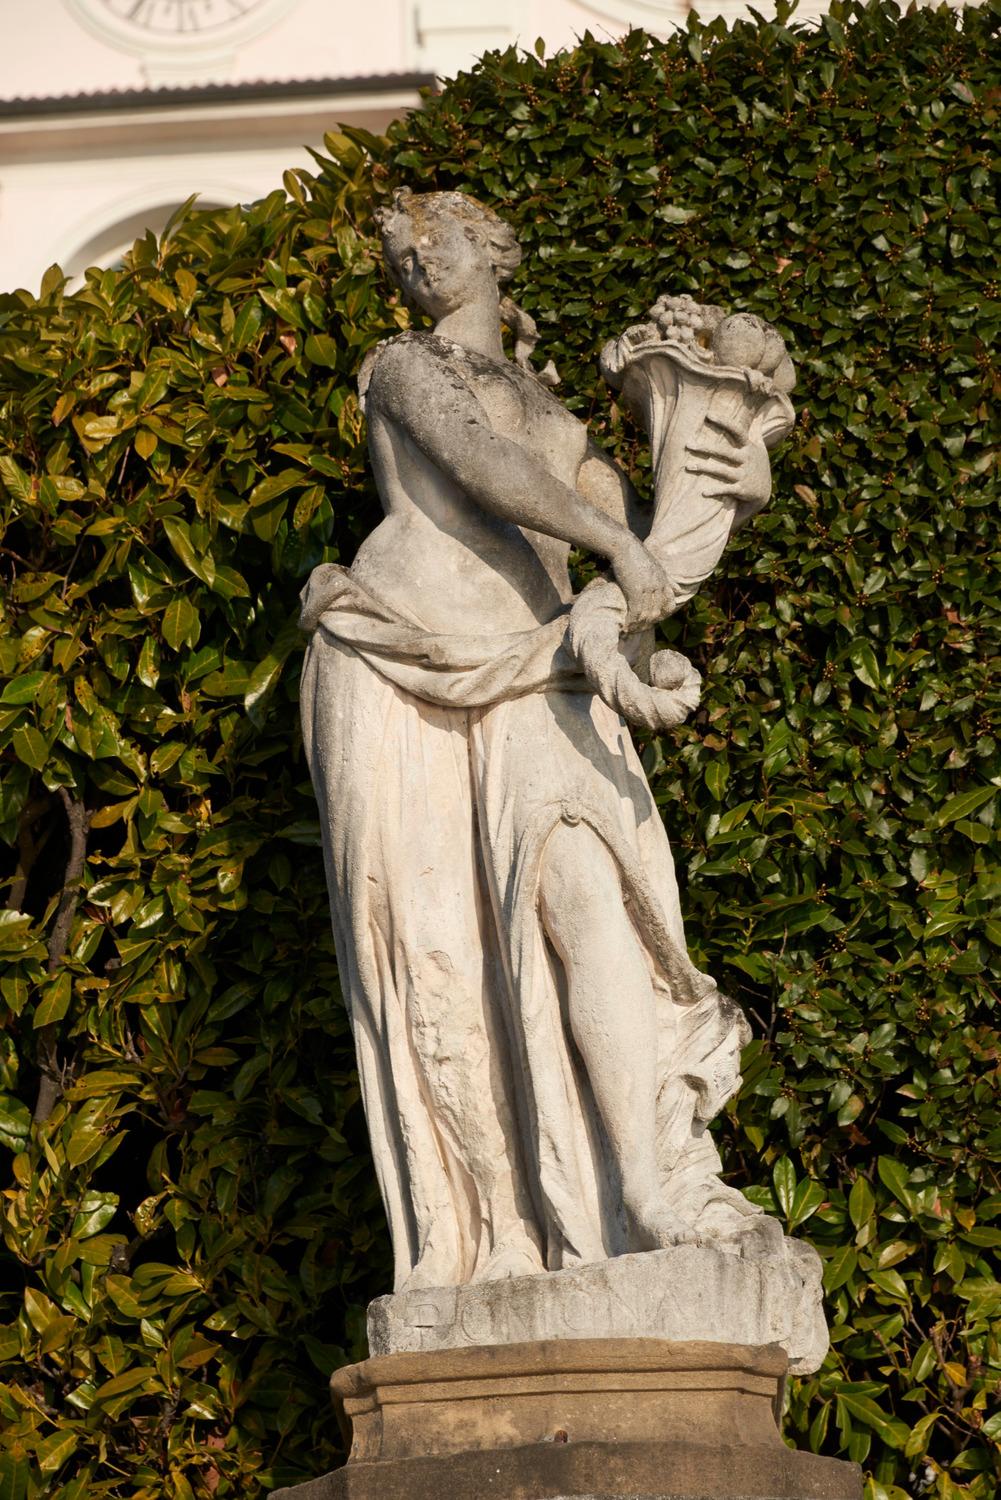 SCULTURE DEL CANCELLO C'è un grande cancello che separa Villa Carlotta dalla strada. Lo vedi? Sopra ci sono 12 statue molto antiche. Eccone due: Flora e Pomona, due figure mitologiche.